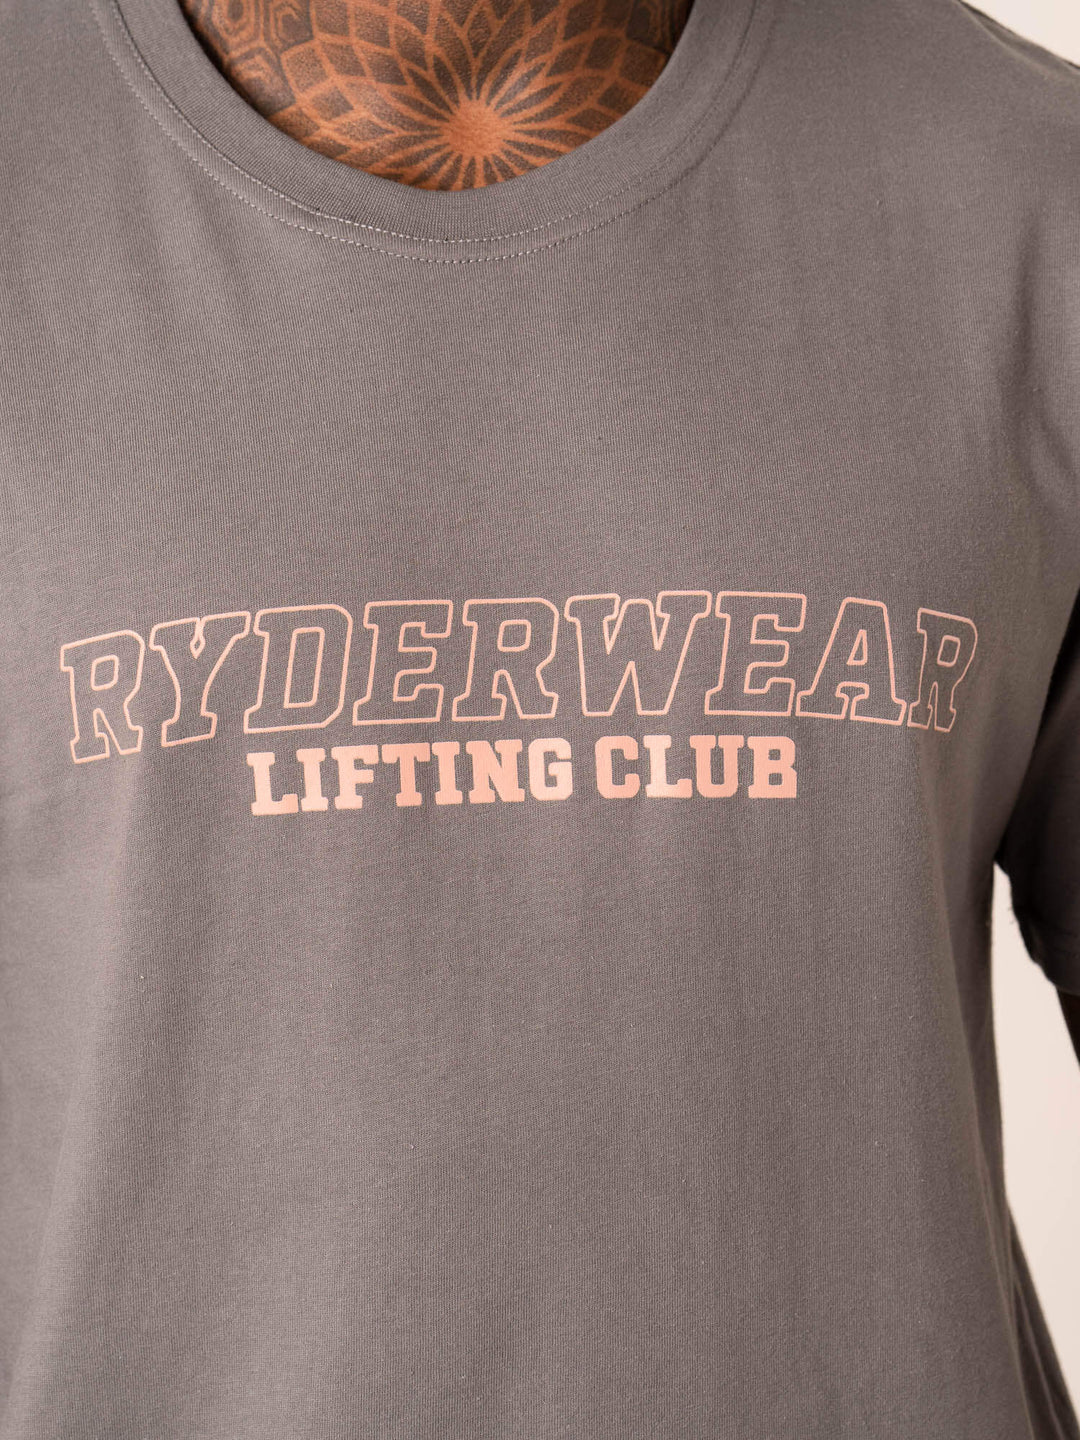 Lifting Club T-Shirt - Charcoal Clothing Ryderwear 